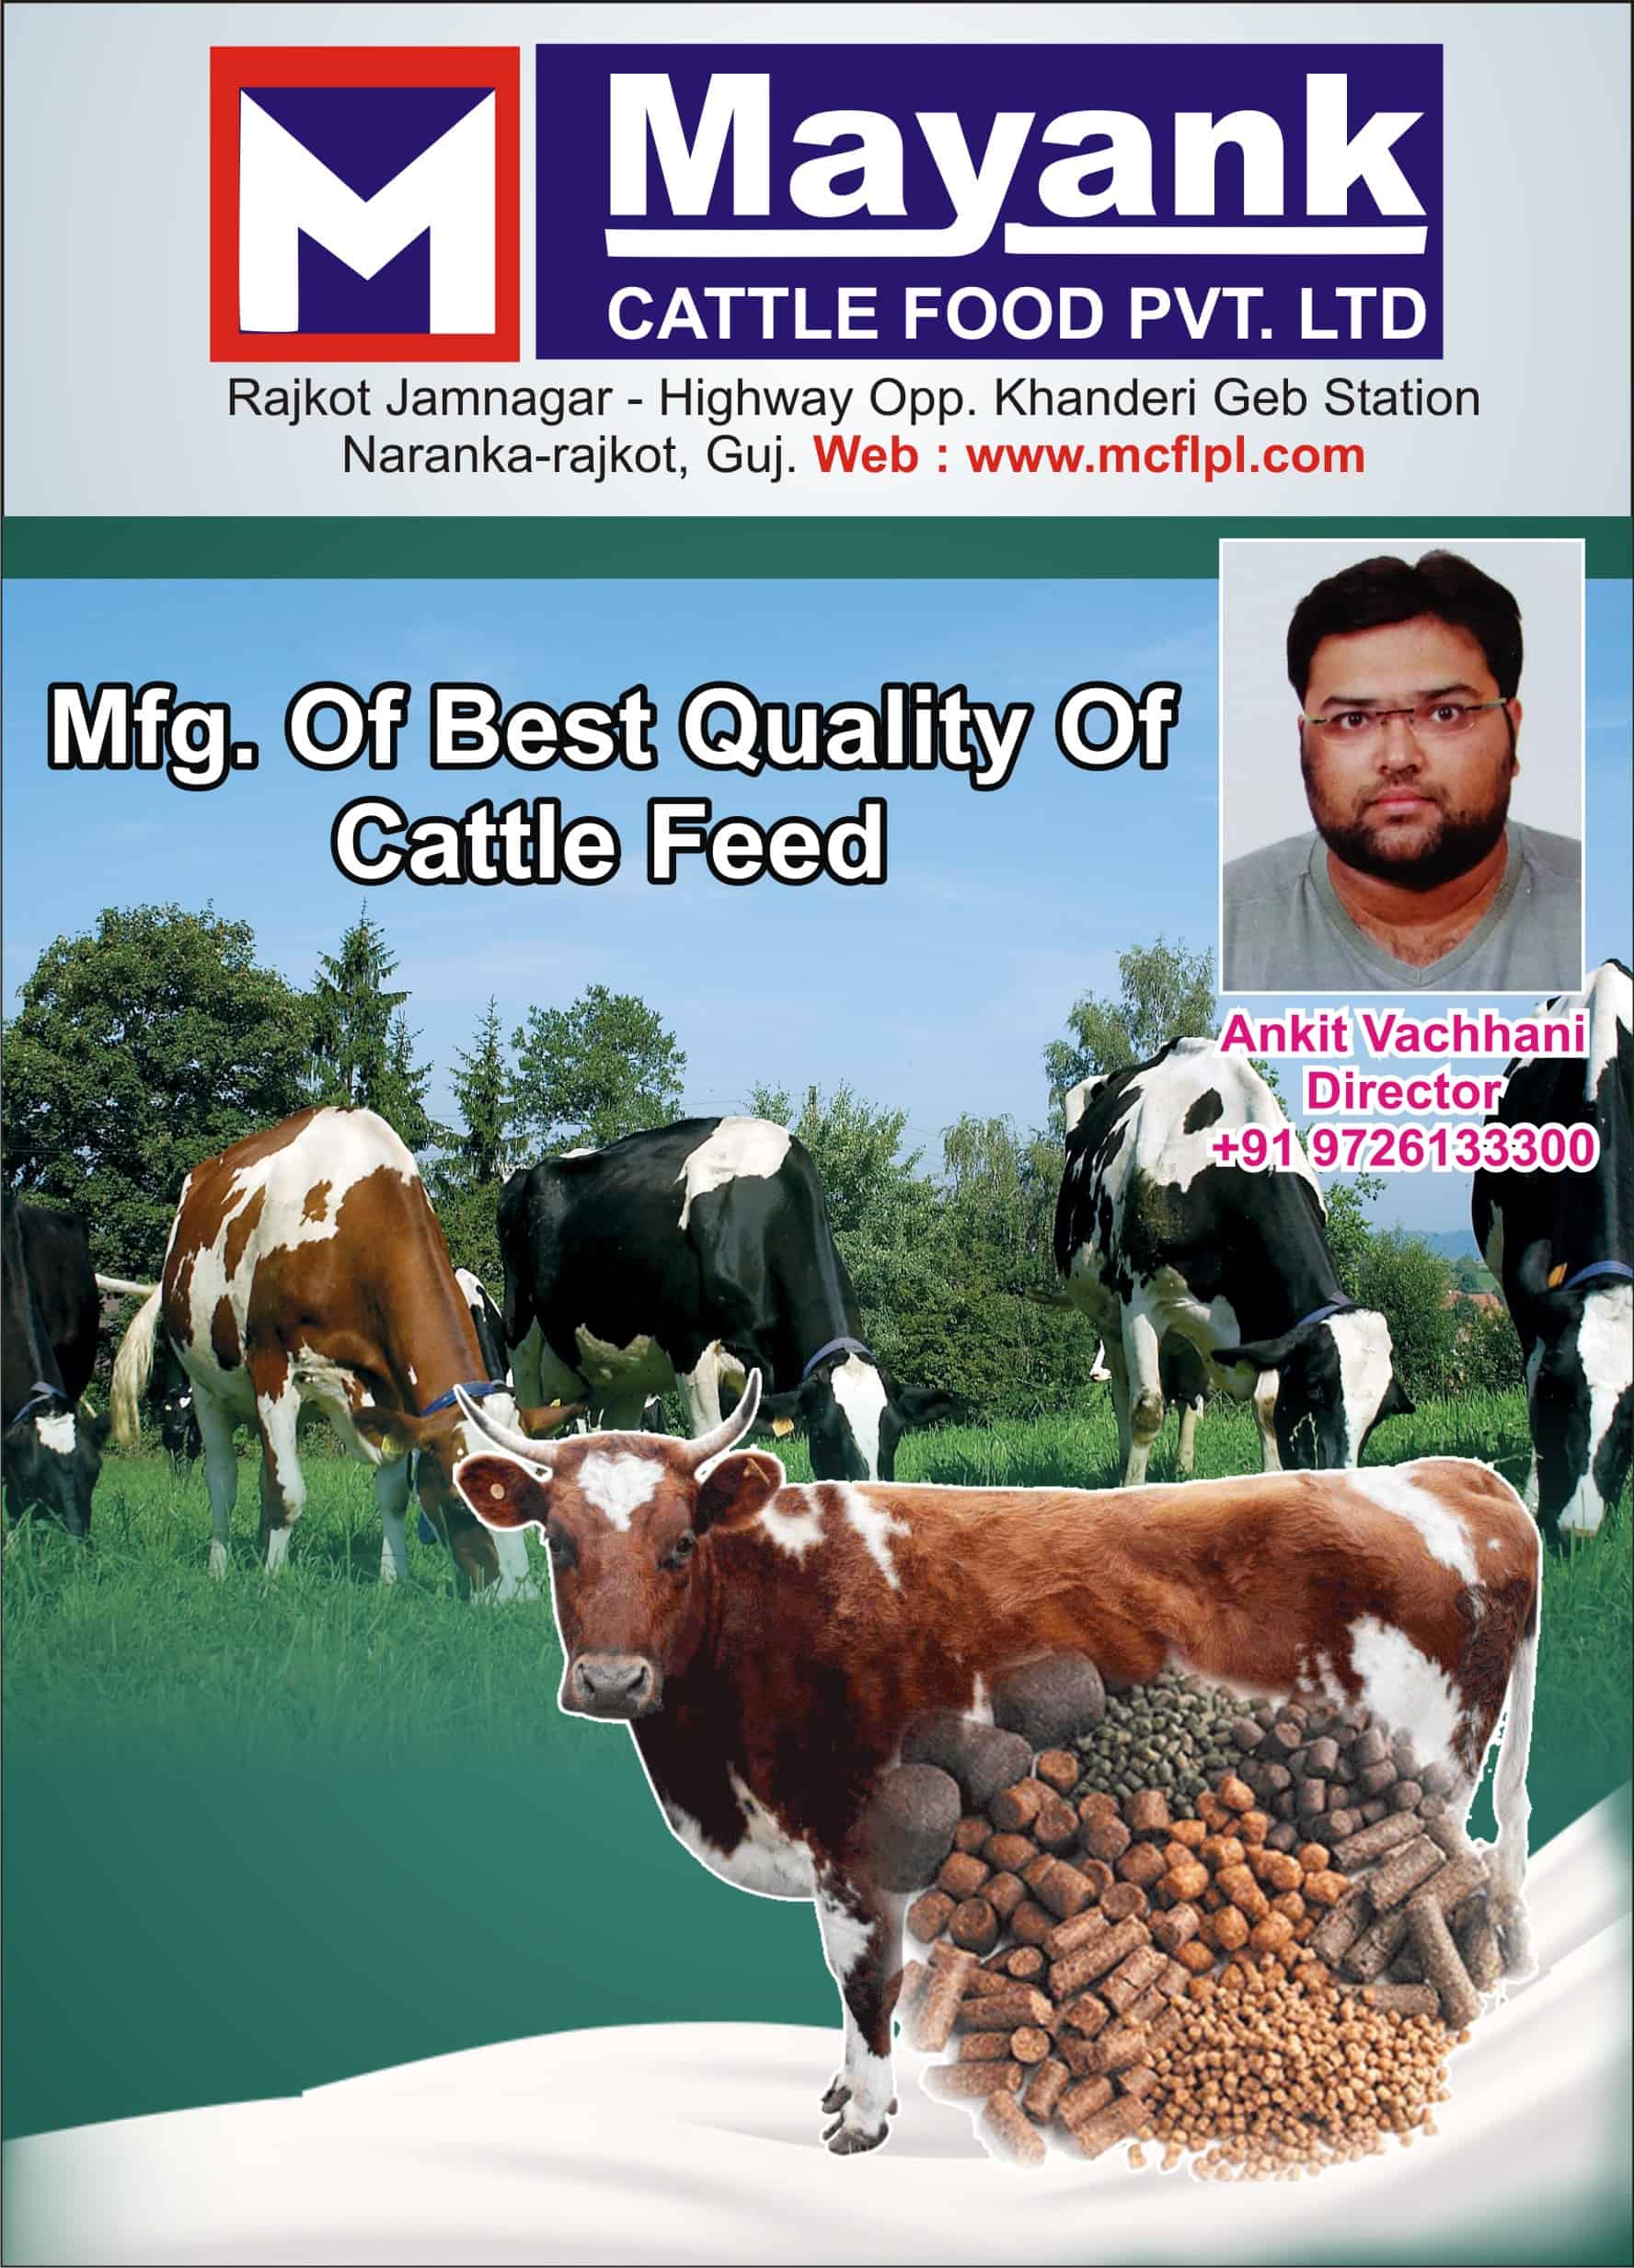 Mayank Cattle Food Pvt. Ltd.